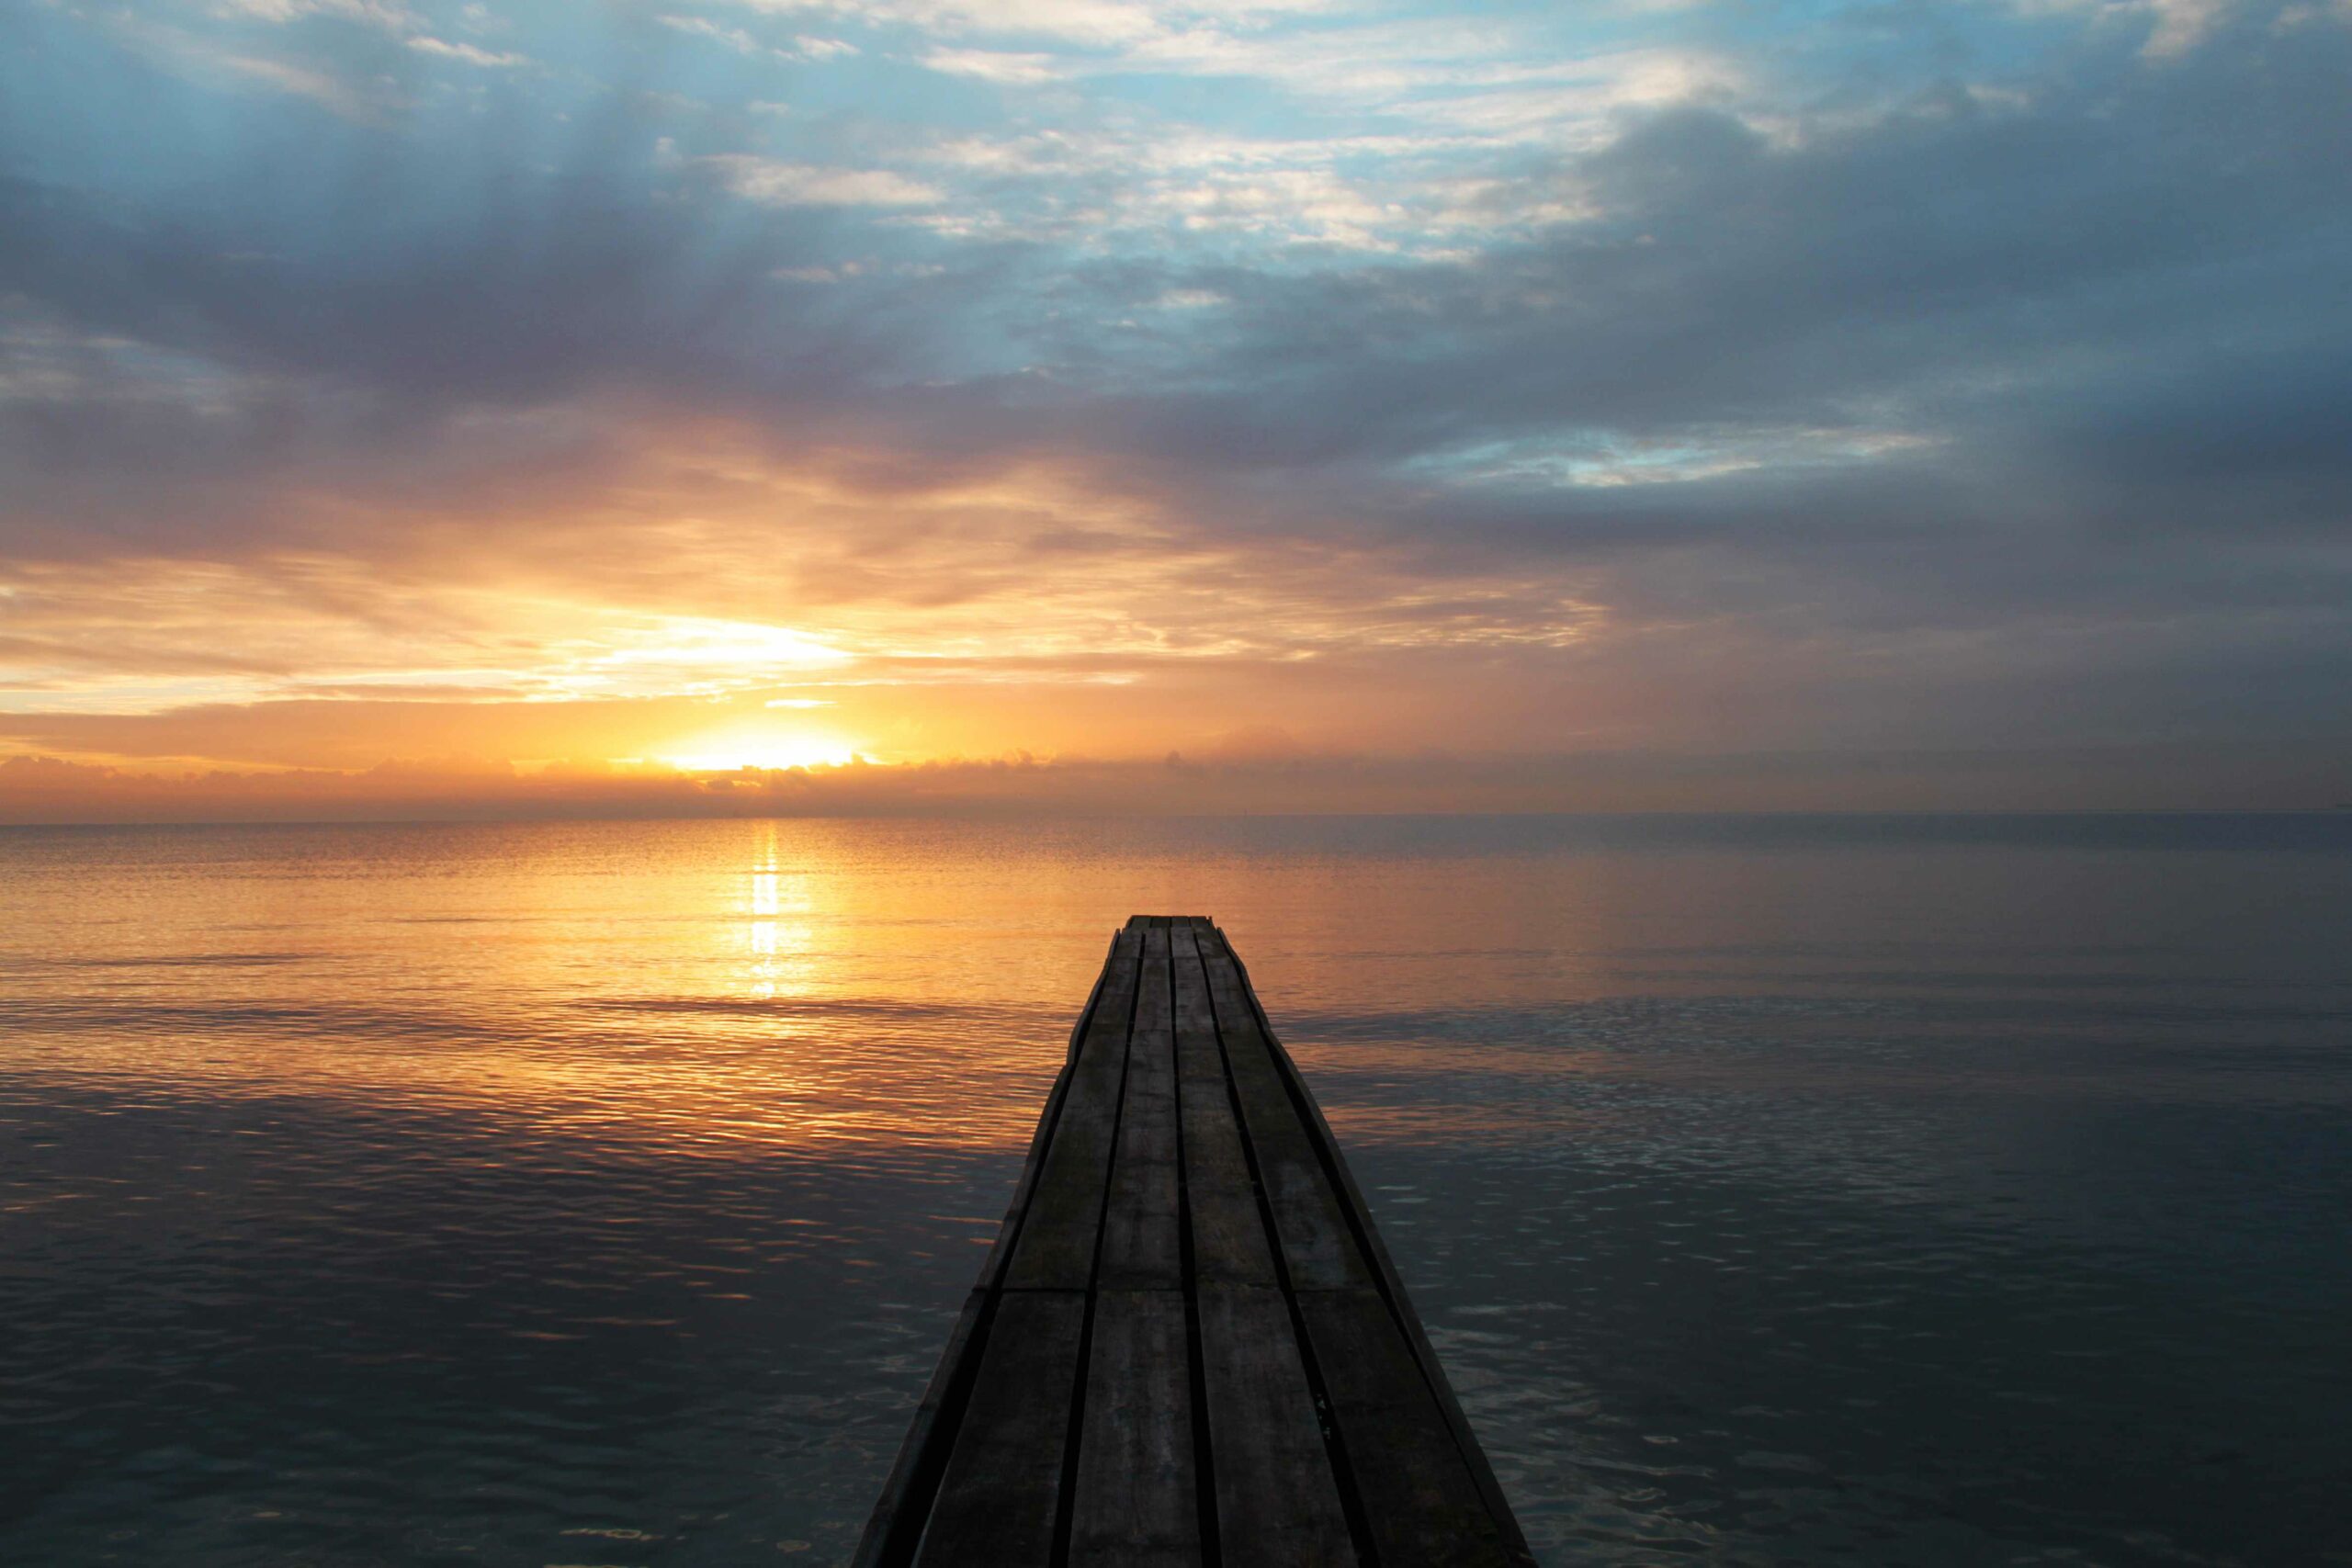 Das Bild zeigt einen Holzsteg bei Sonnenuntergang, welcher auf das Meer hinausgeht.